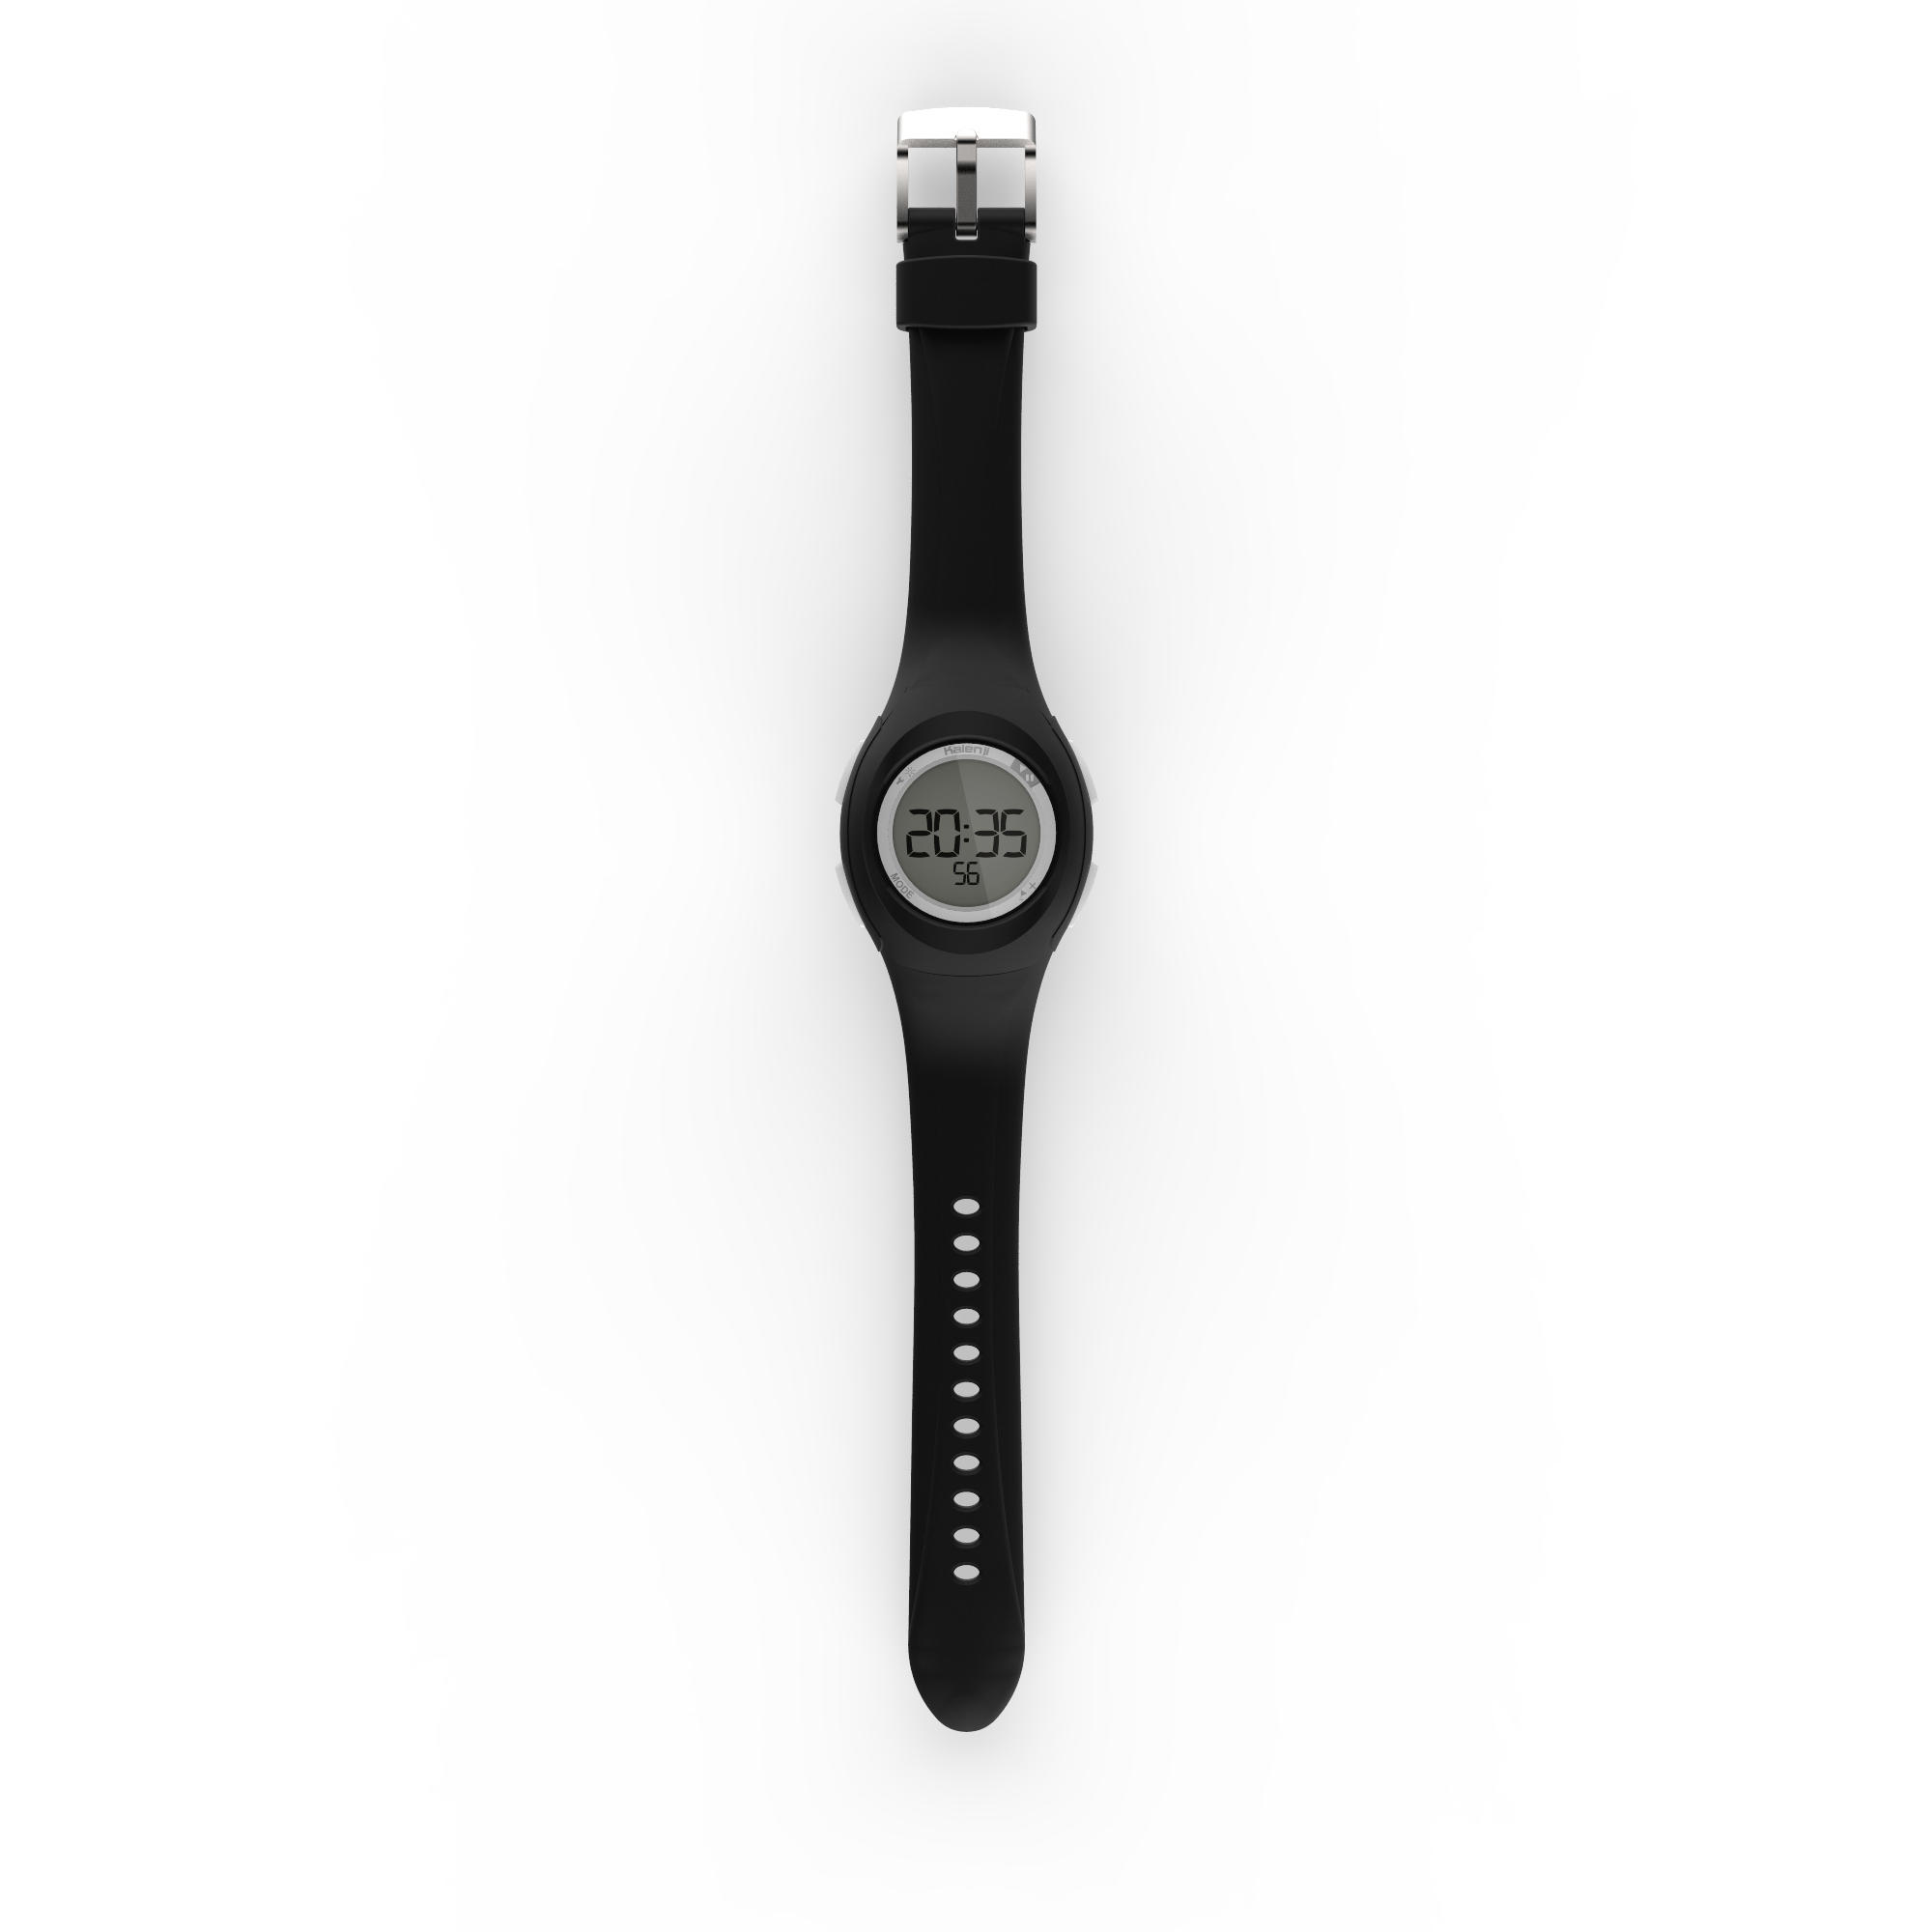 Kalenji Sports Timer Wristwatch - W 200 S Black